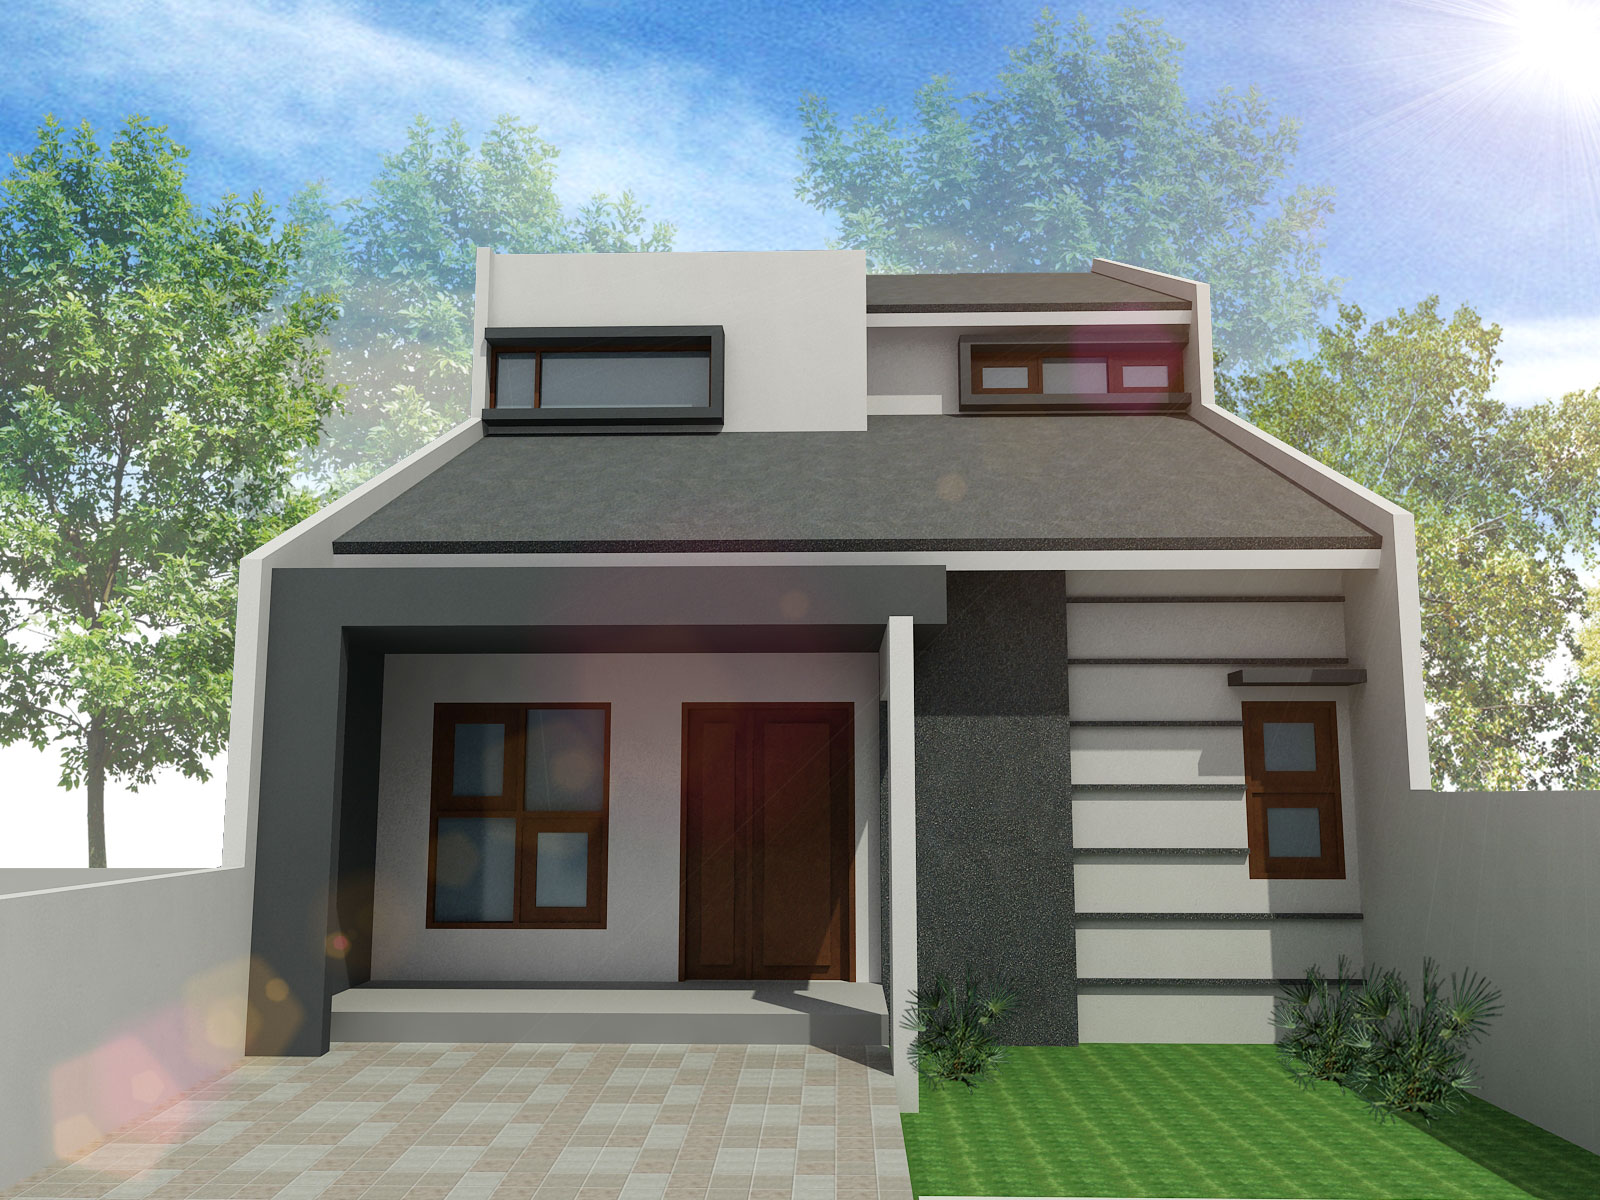 65 Desain Rumah Minimalis 1 Lantai Full Desain Rumah Minimalis Terbaru